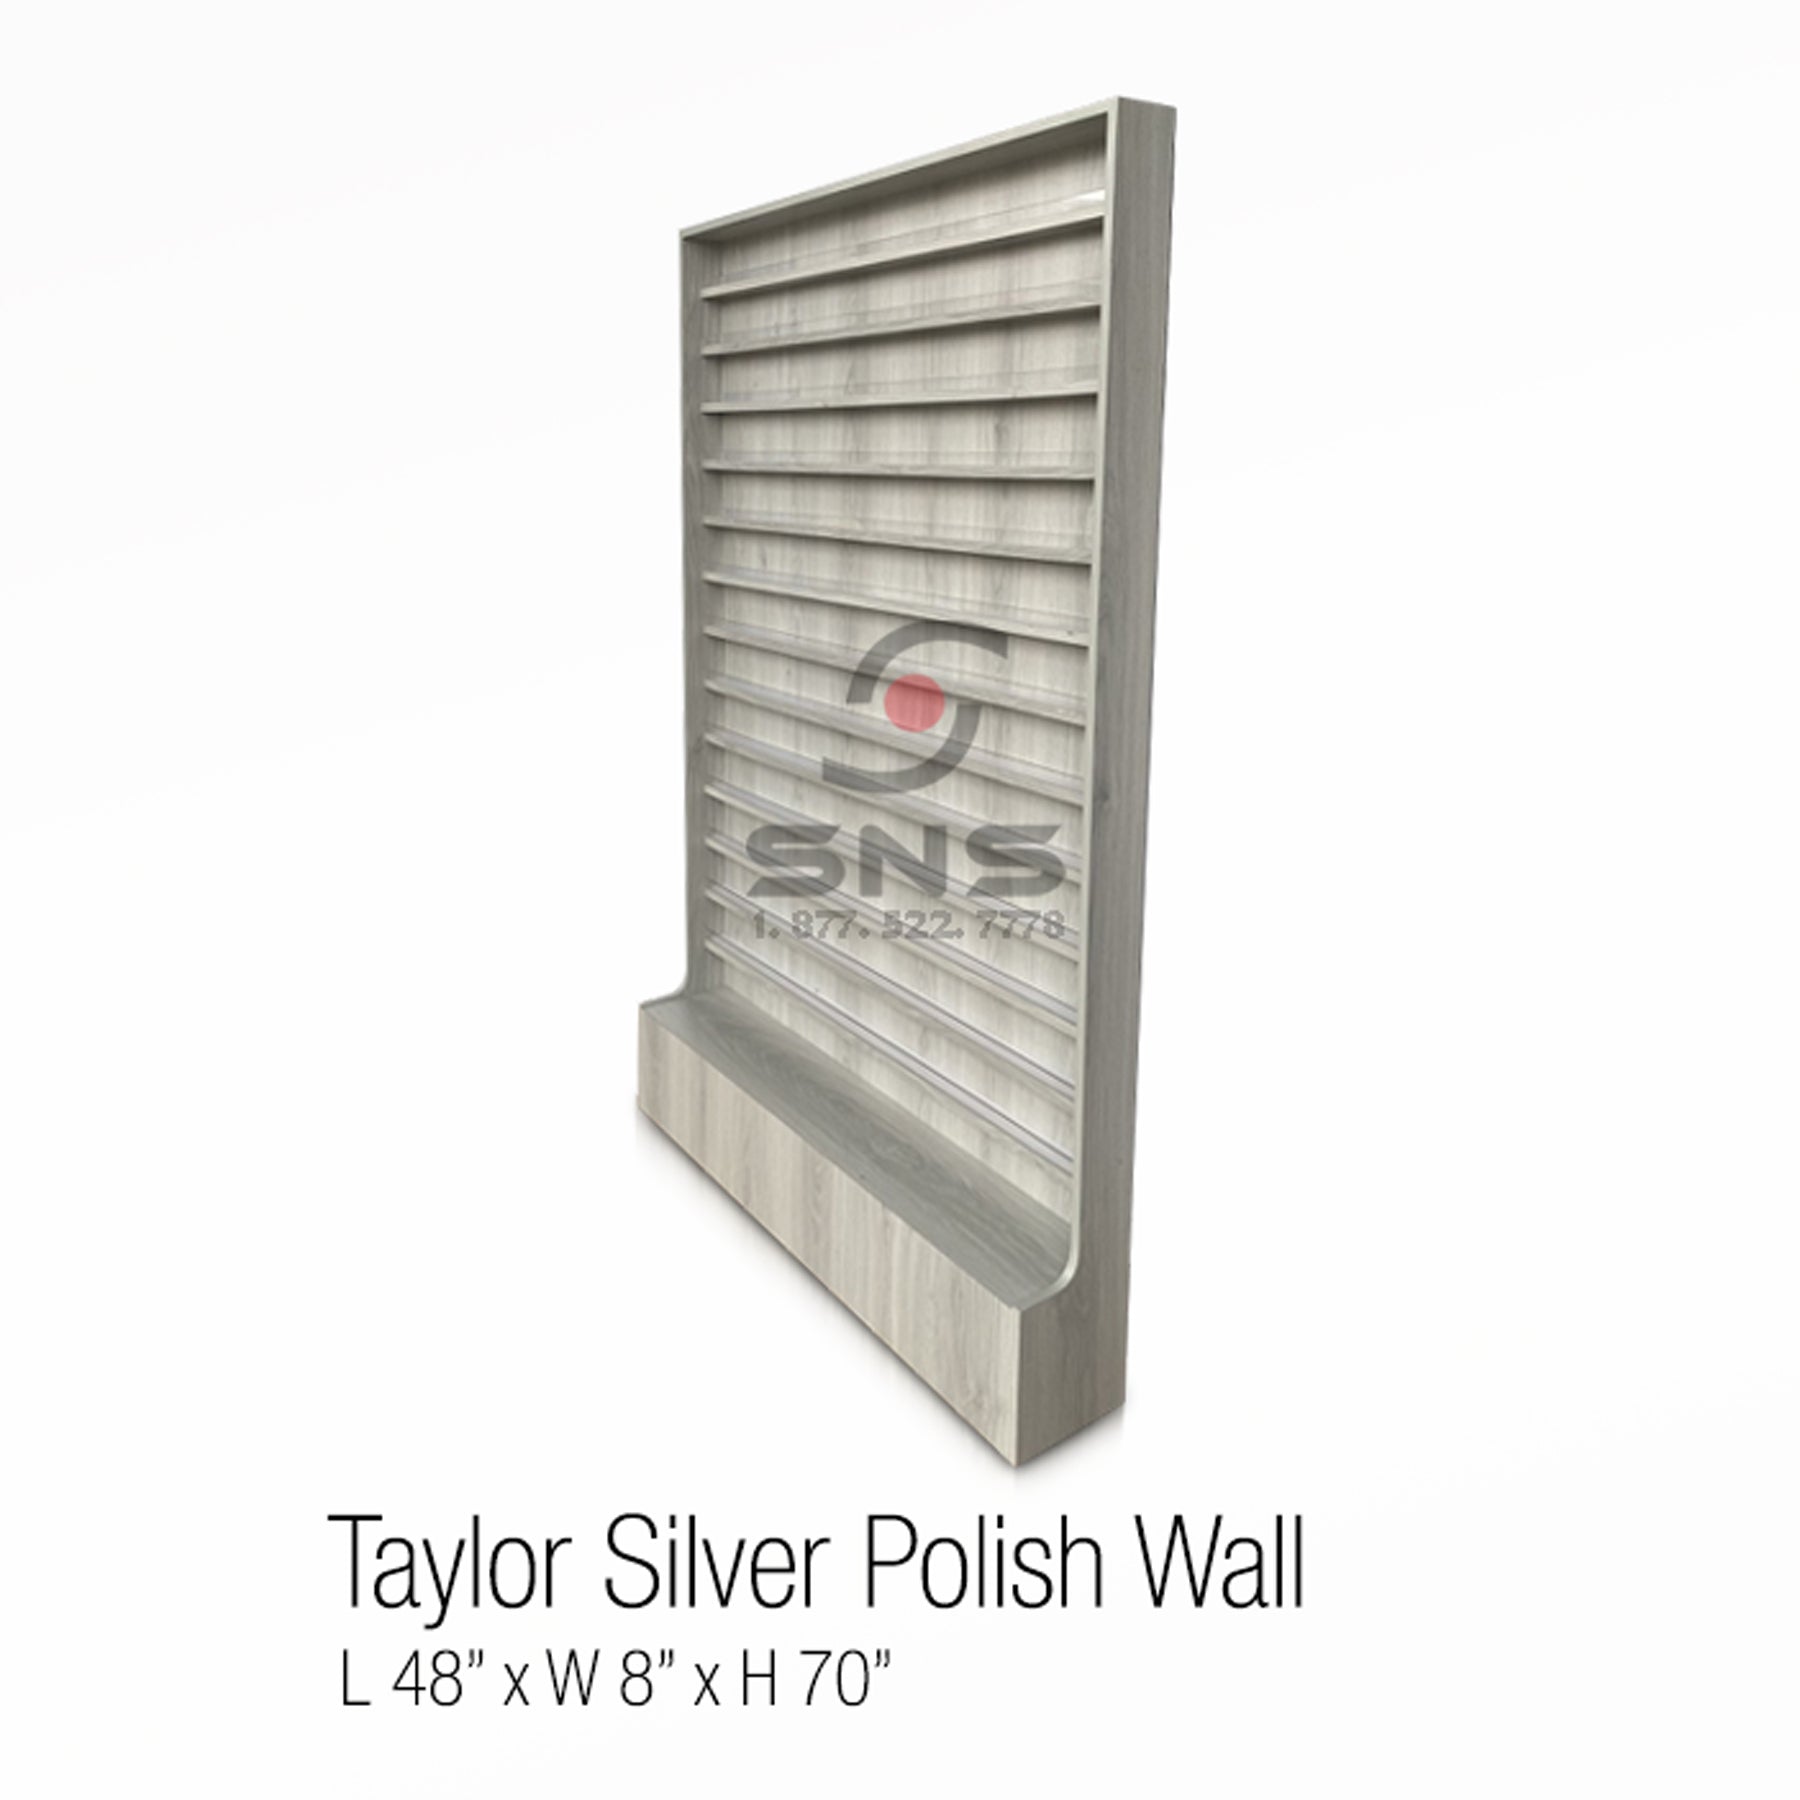 Taylor Silver Polish Wall 48